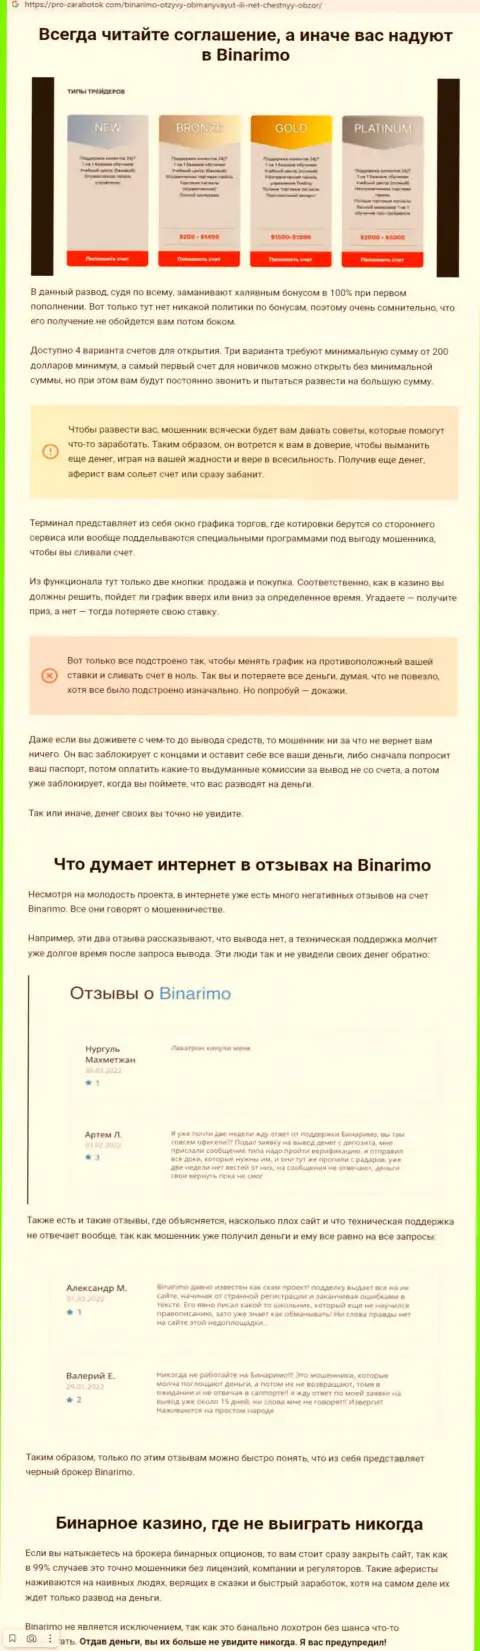 Binarimo Com - это махинаторы, которым средства доверять не стоит ни при каких обстоятельствах (обзор)